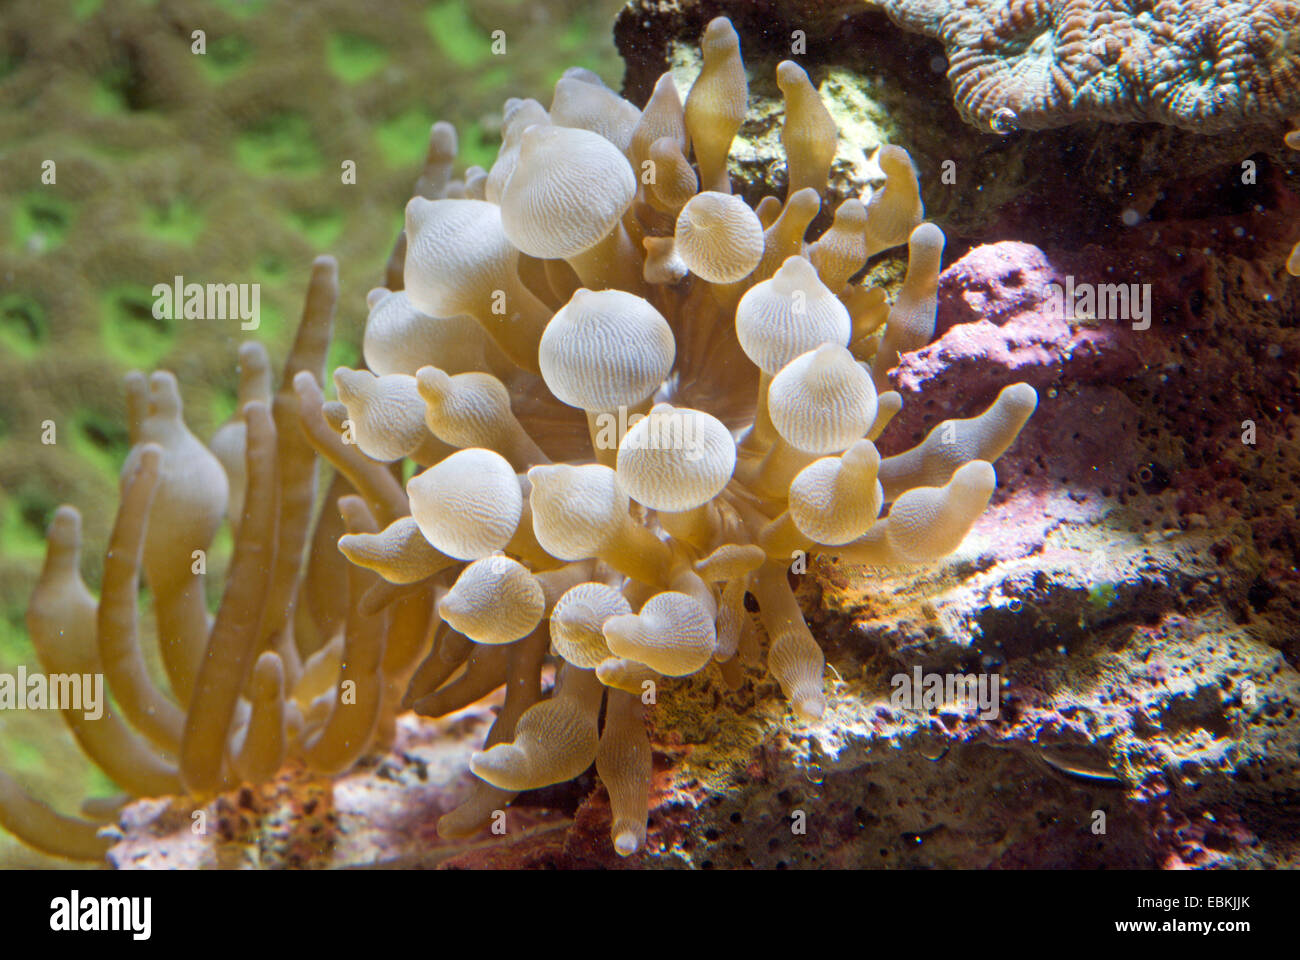 Quattro-colorato anemone, bubble-punta anemone, bulbo-punta anemone, bulbo-tentacolo anemone marittimo, maroon (anemone Entacmaea quadricolor), ad alto angolo di visione Foto Stock